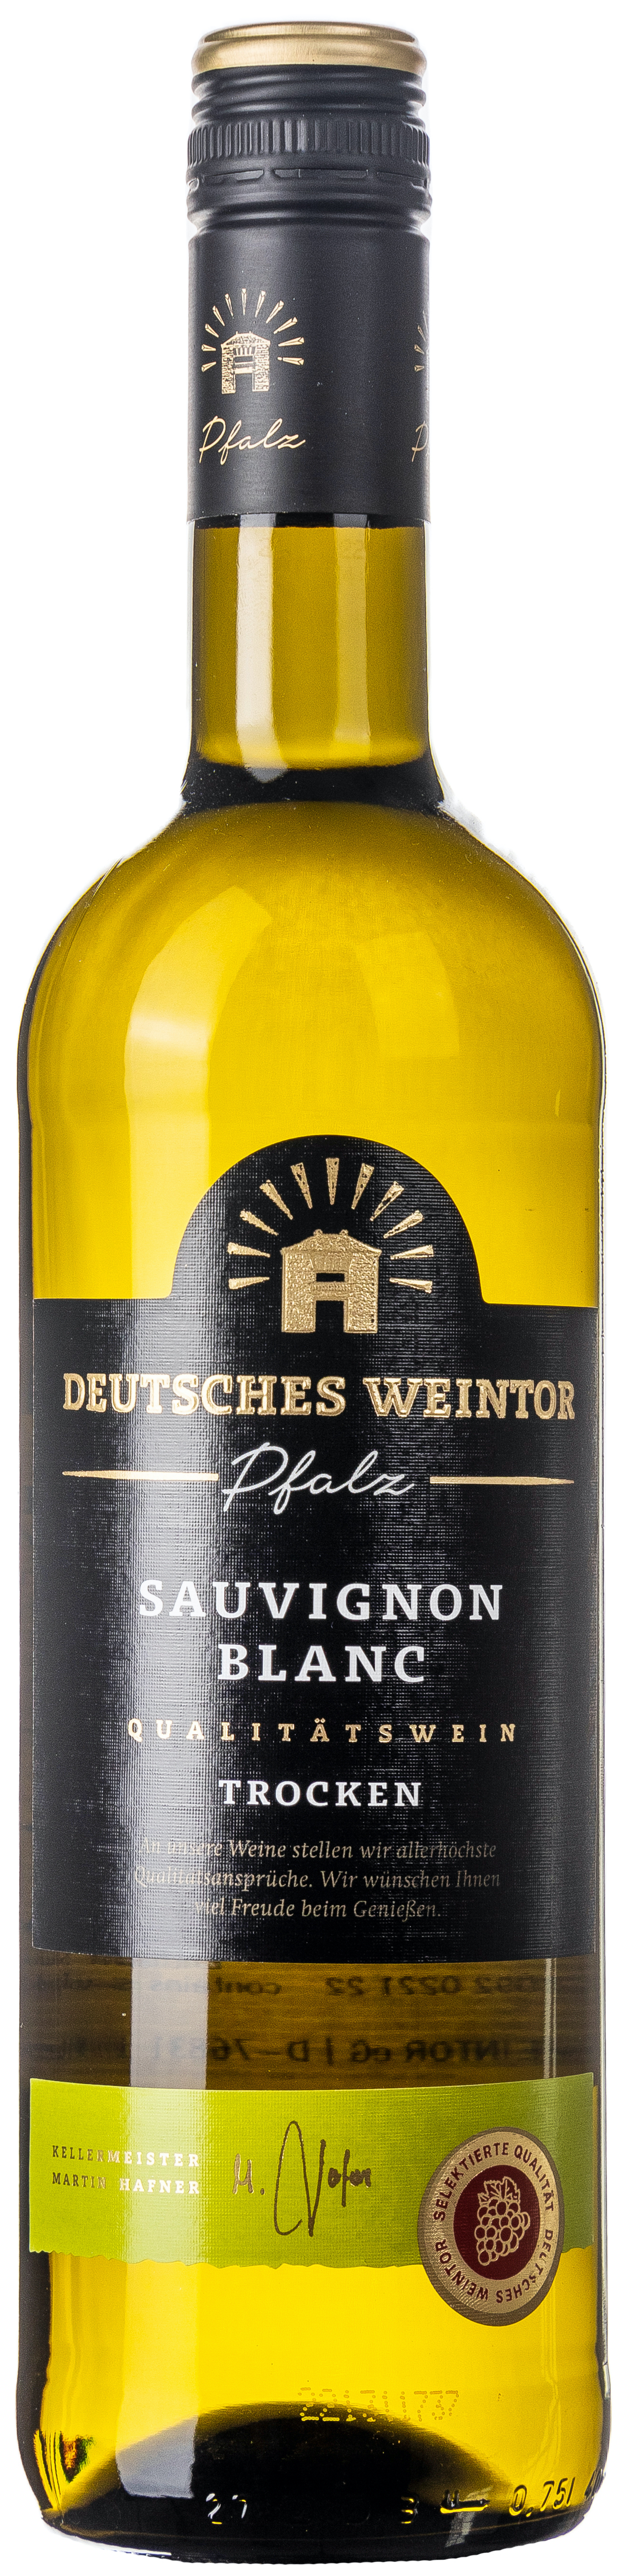 Deutsches Weintor Sauvignon Blanc trocken 12% vol. 0,75L